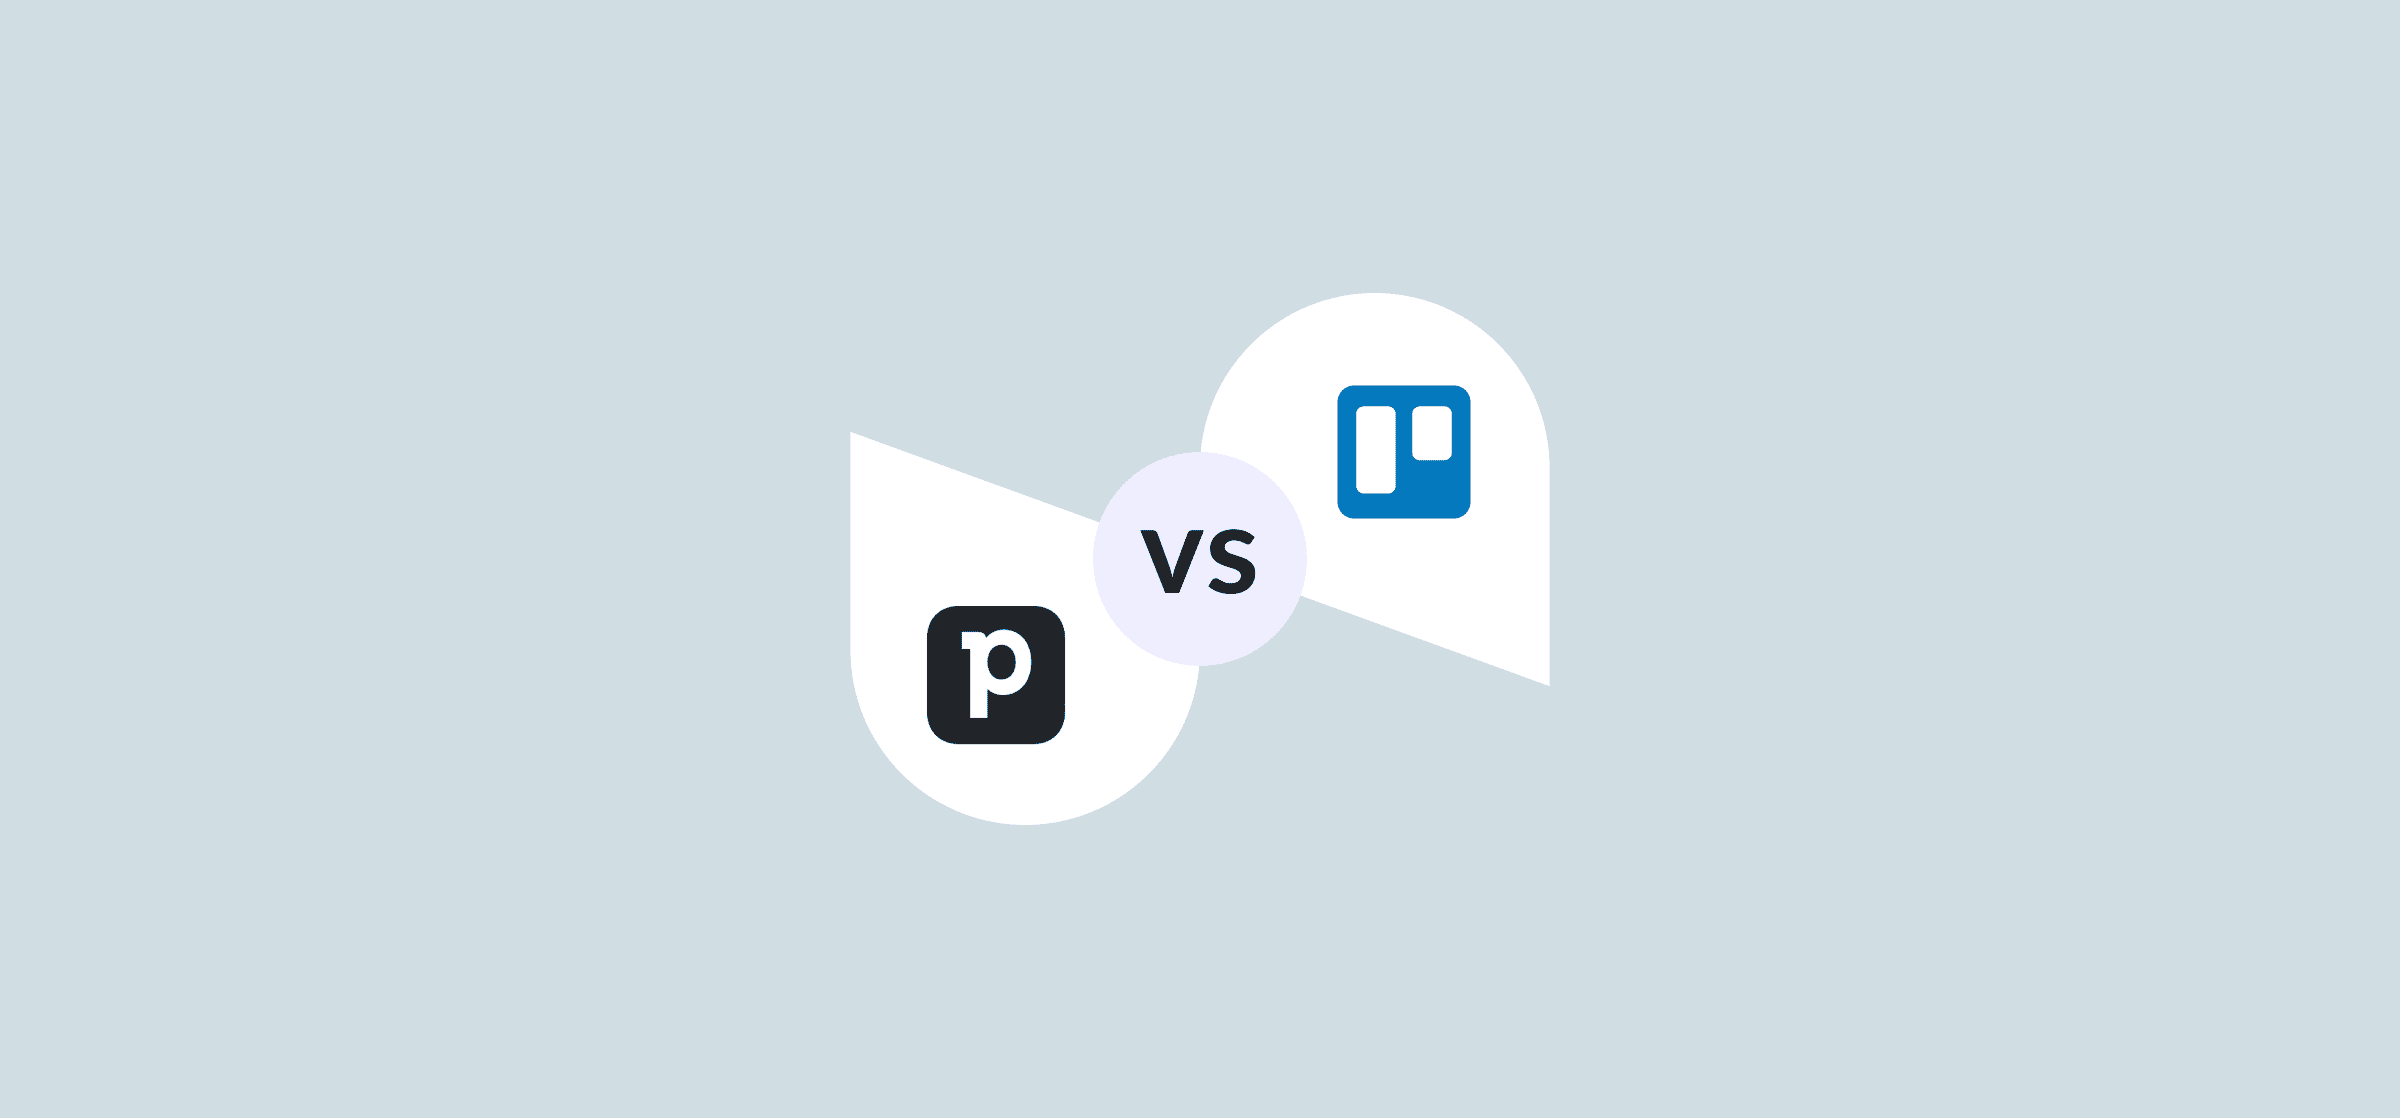 Logos for Pipedrive vs. Trello, representing a blog article comparing them.